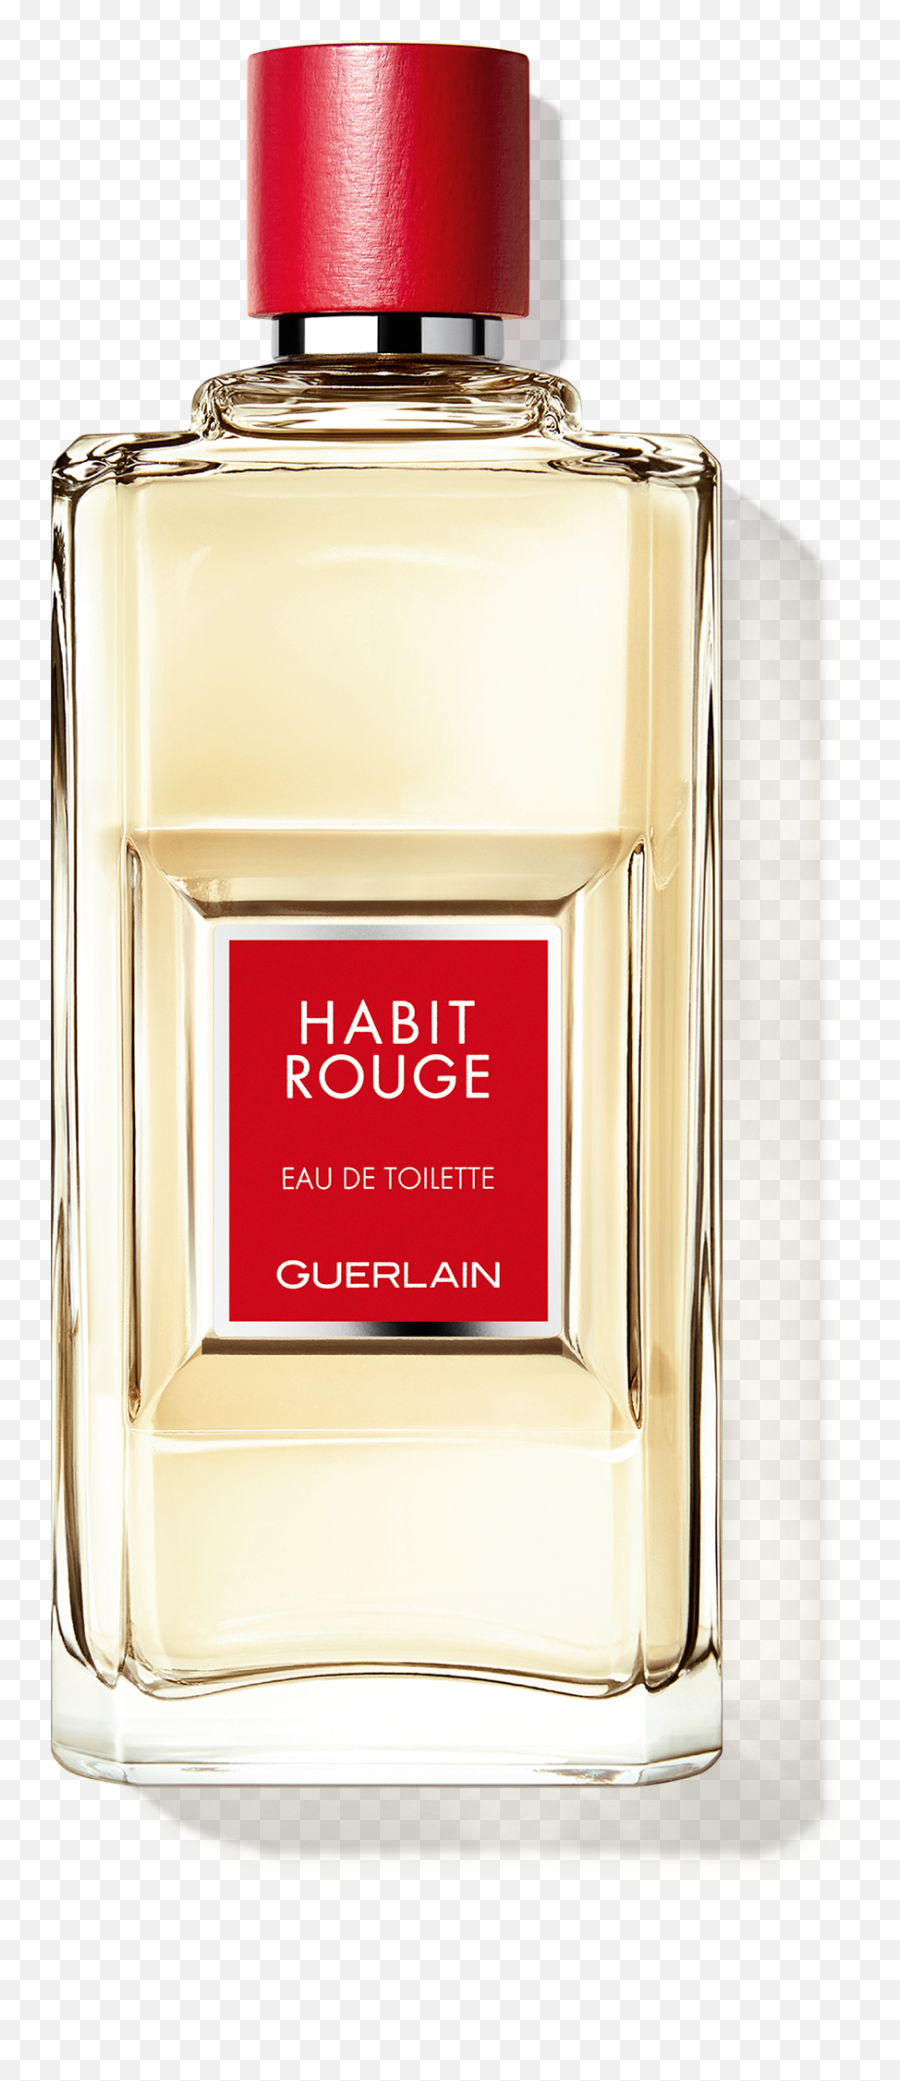 Habit Rouge Eau De Toilette Guerlain - Habit Rouge Guerlain Emoji,How To Properly Bottle Up Emotions